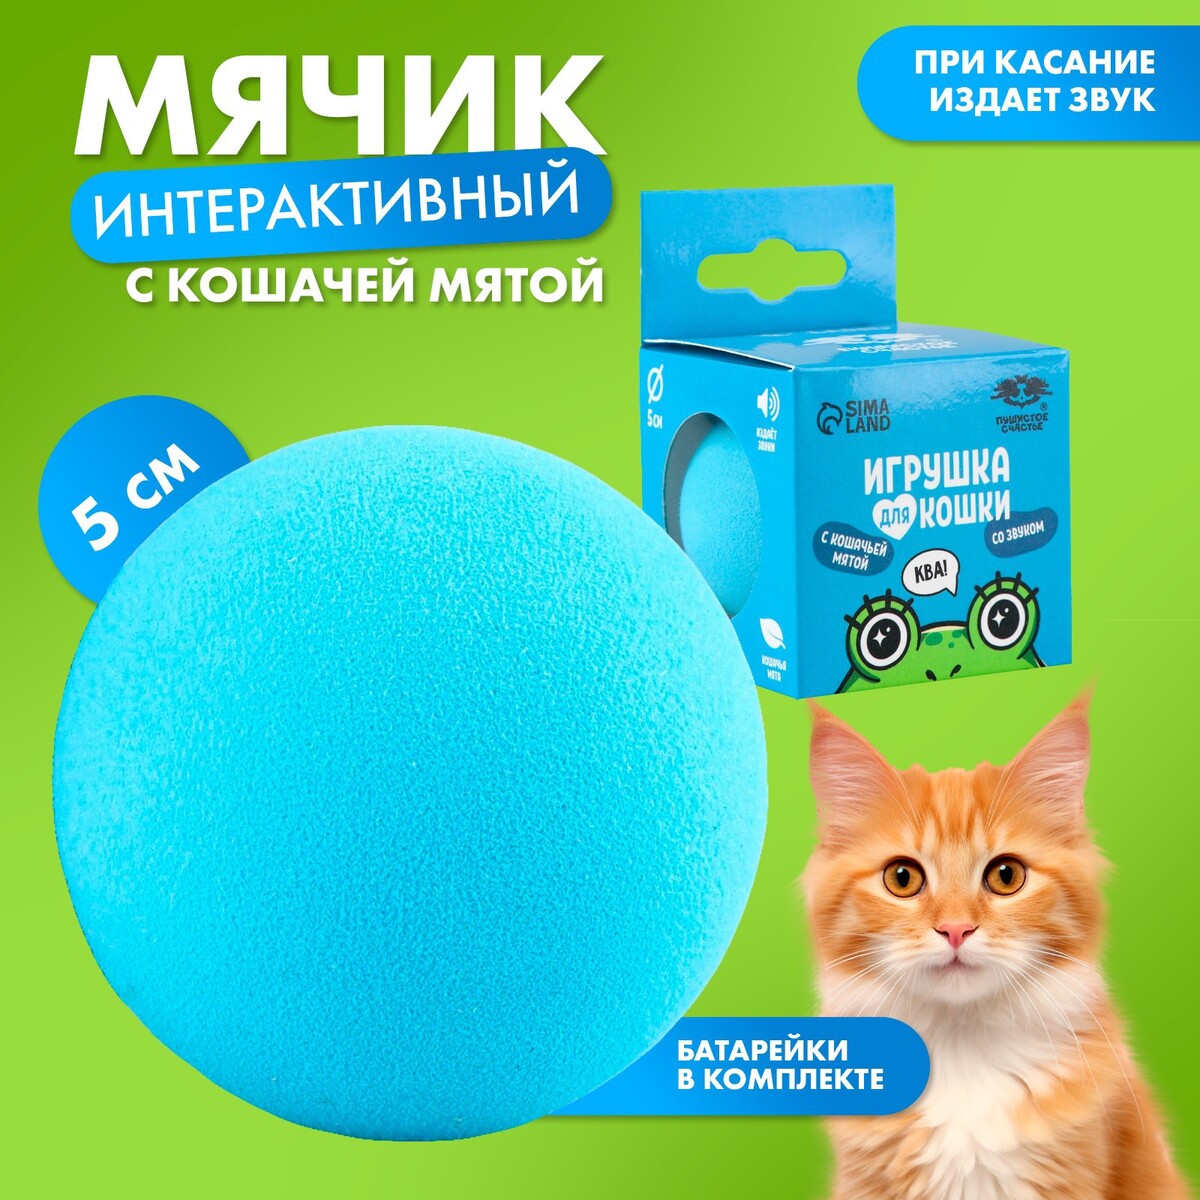 Игрушка для кошек. мячик интерактивный Пушистое счастье 06020890: купить за  420 руб в интернет магазине с бесплатной доставкой